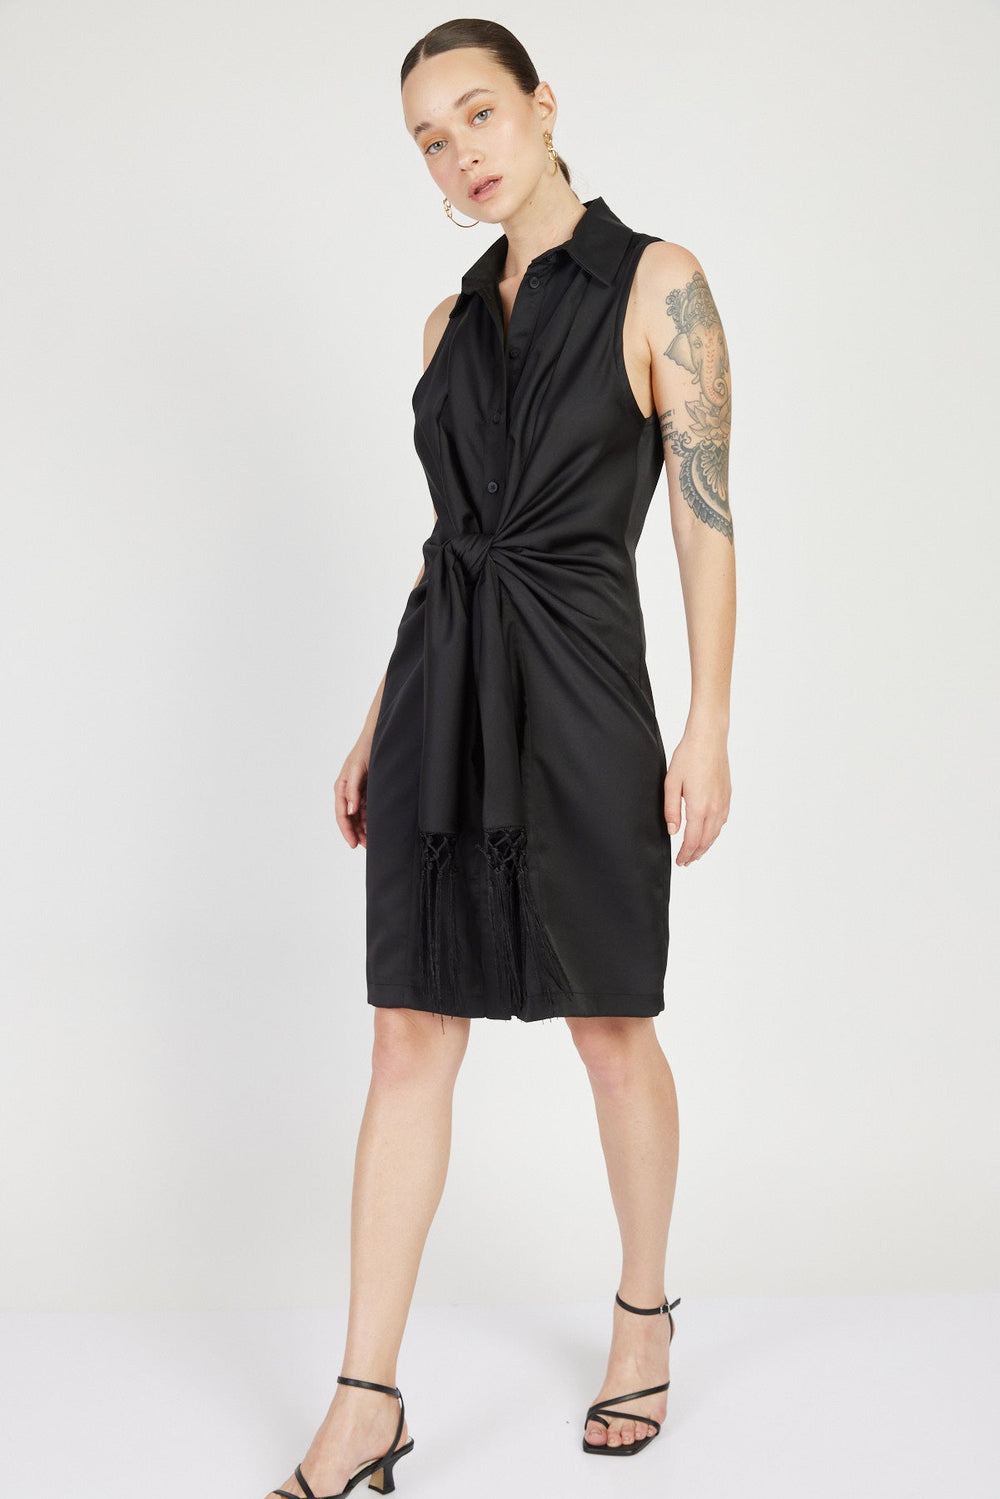 שמלת צעיף מיני בצבע שחור - House Of Jaffa X Razili